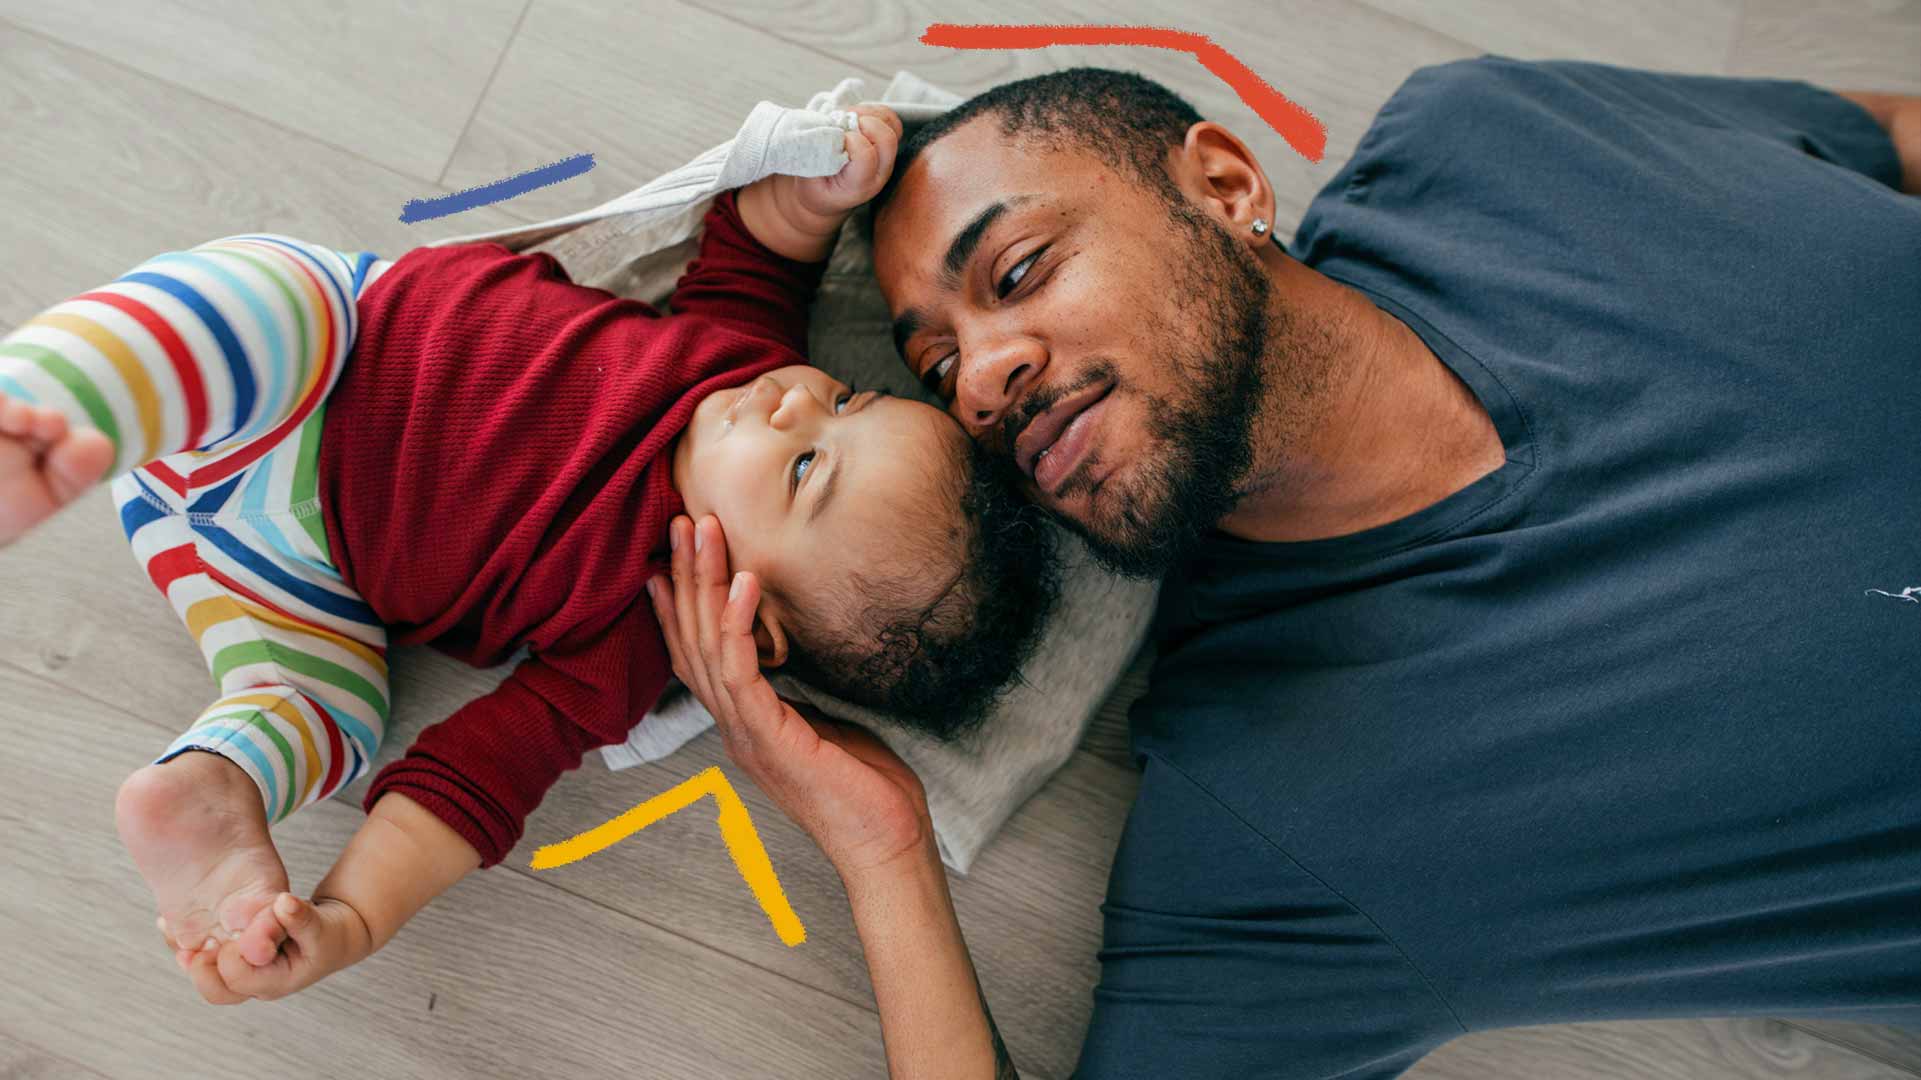 Imagem de um homem negro com um bebê deitado no chão. O homem faz carinho no bebê.